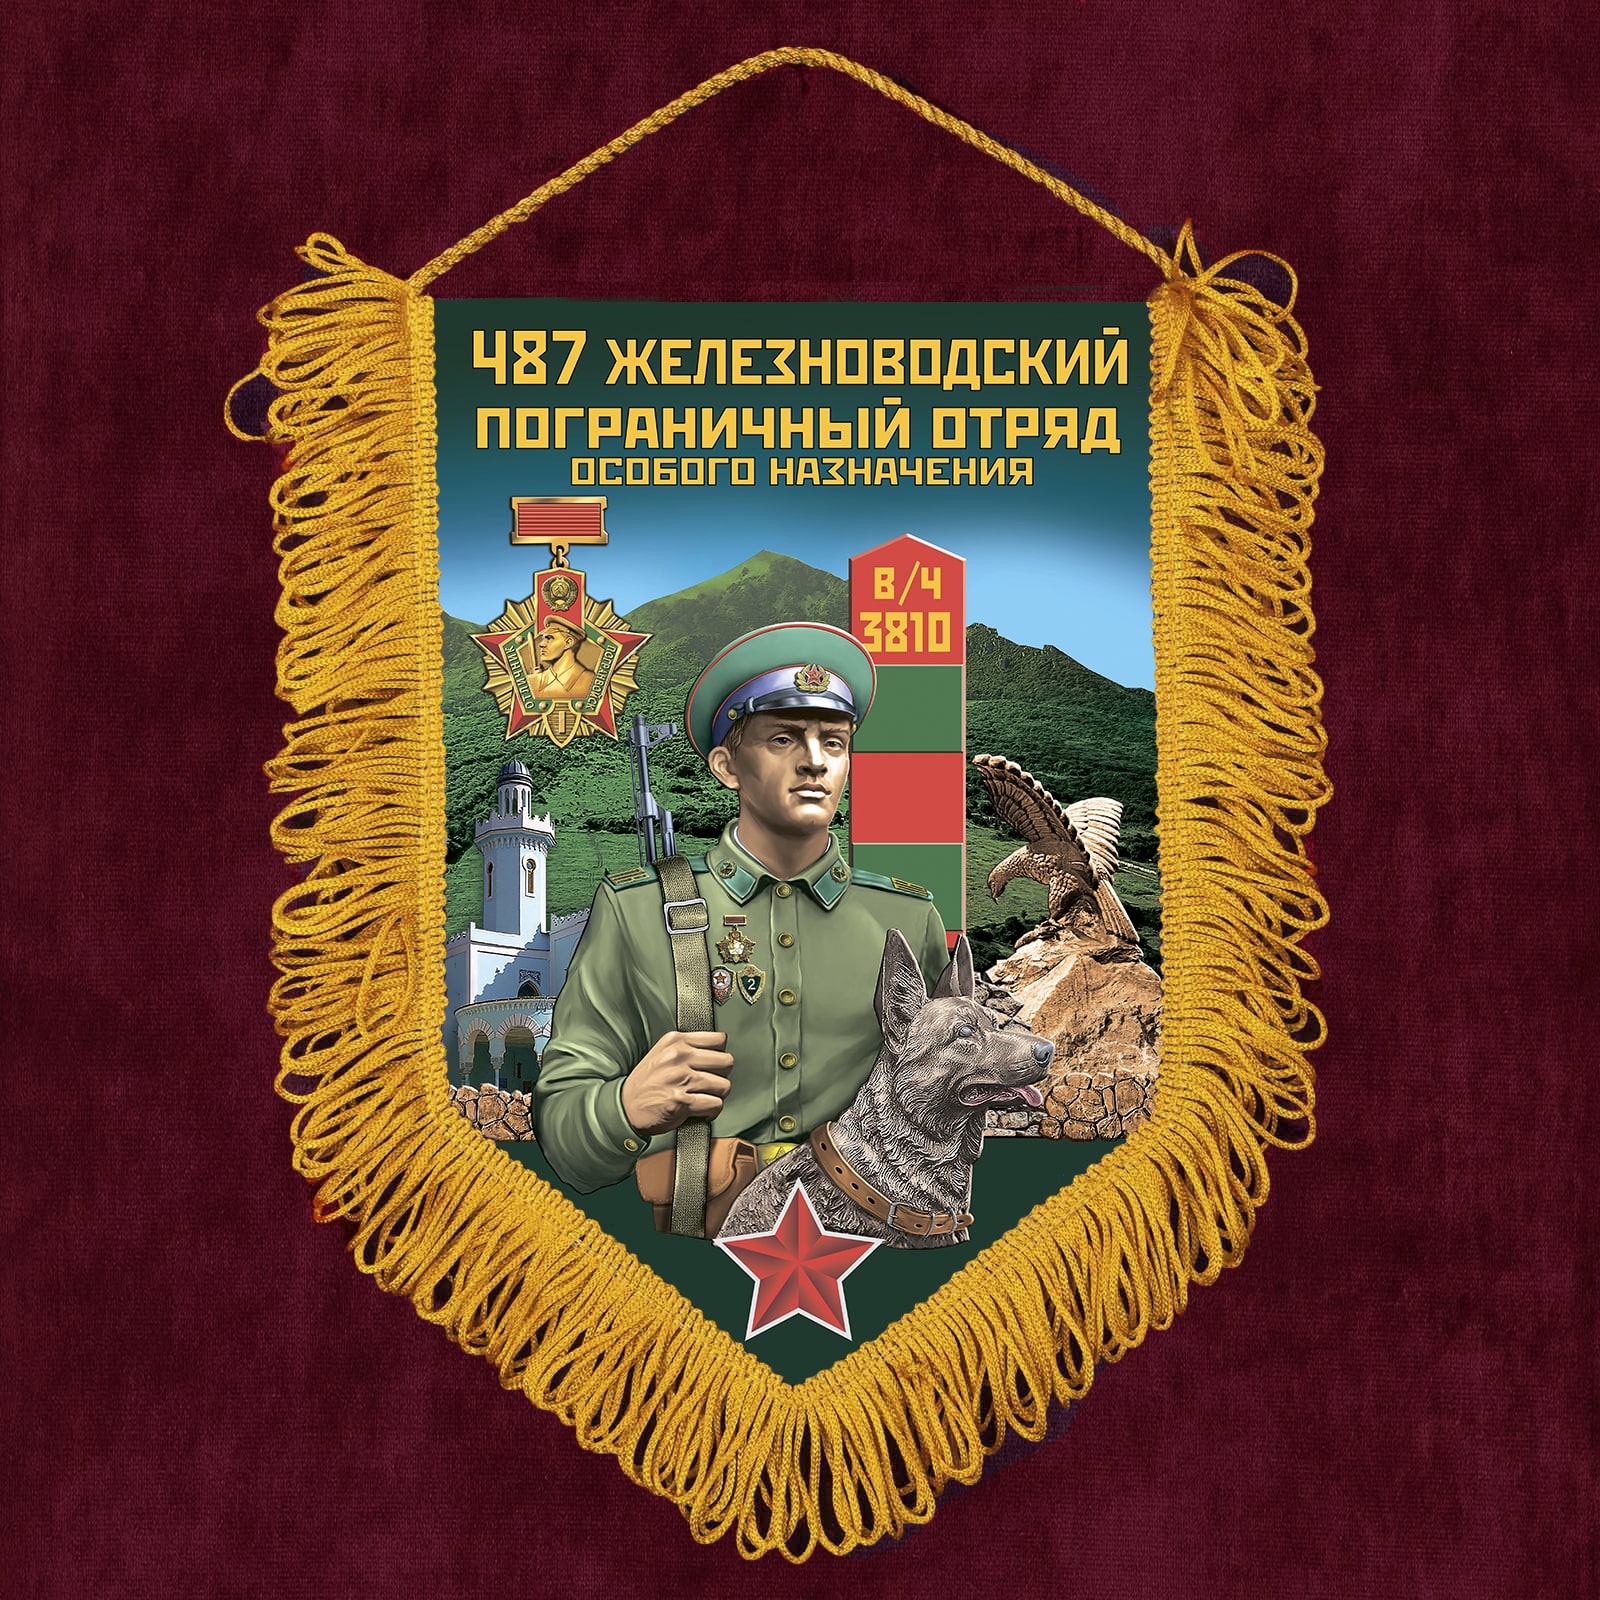 Памятный вымпел "487 Железноводского пограничного отряда особого назначения"